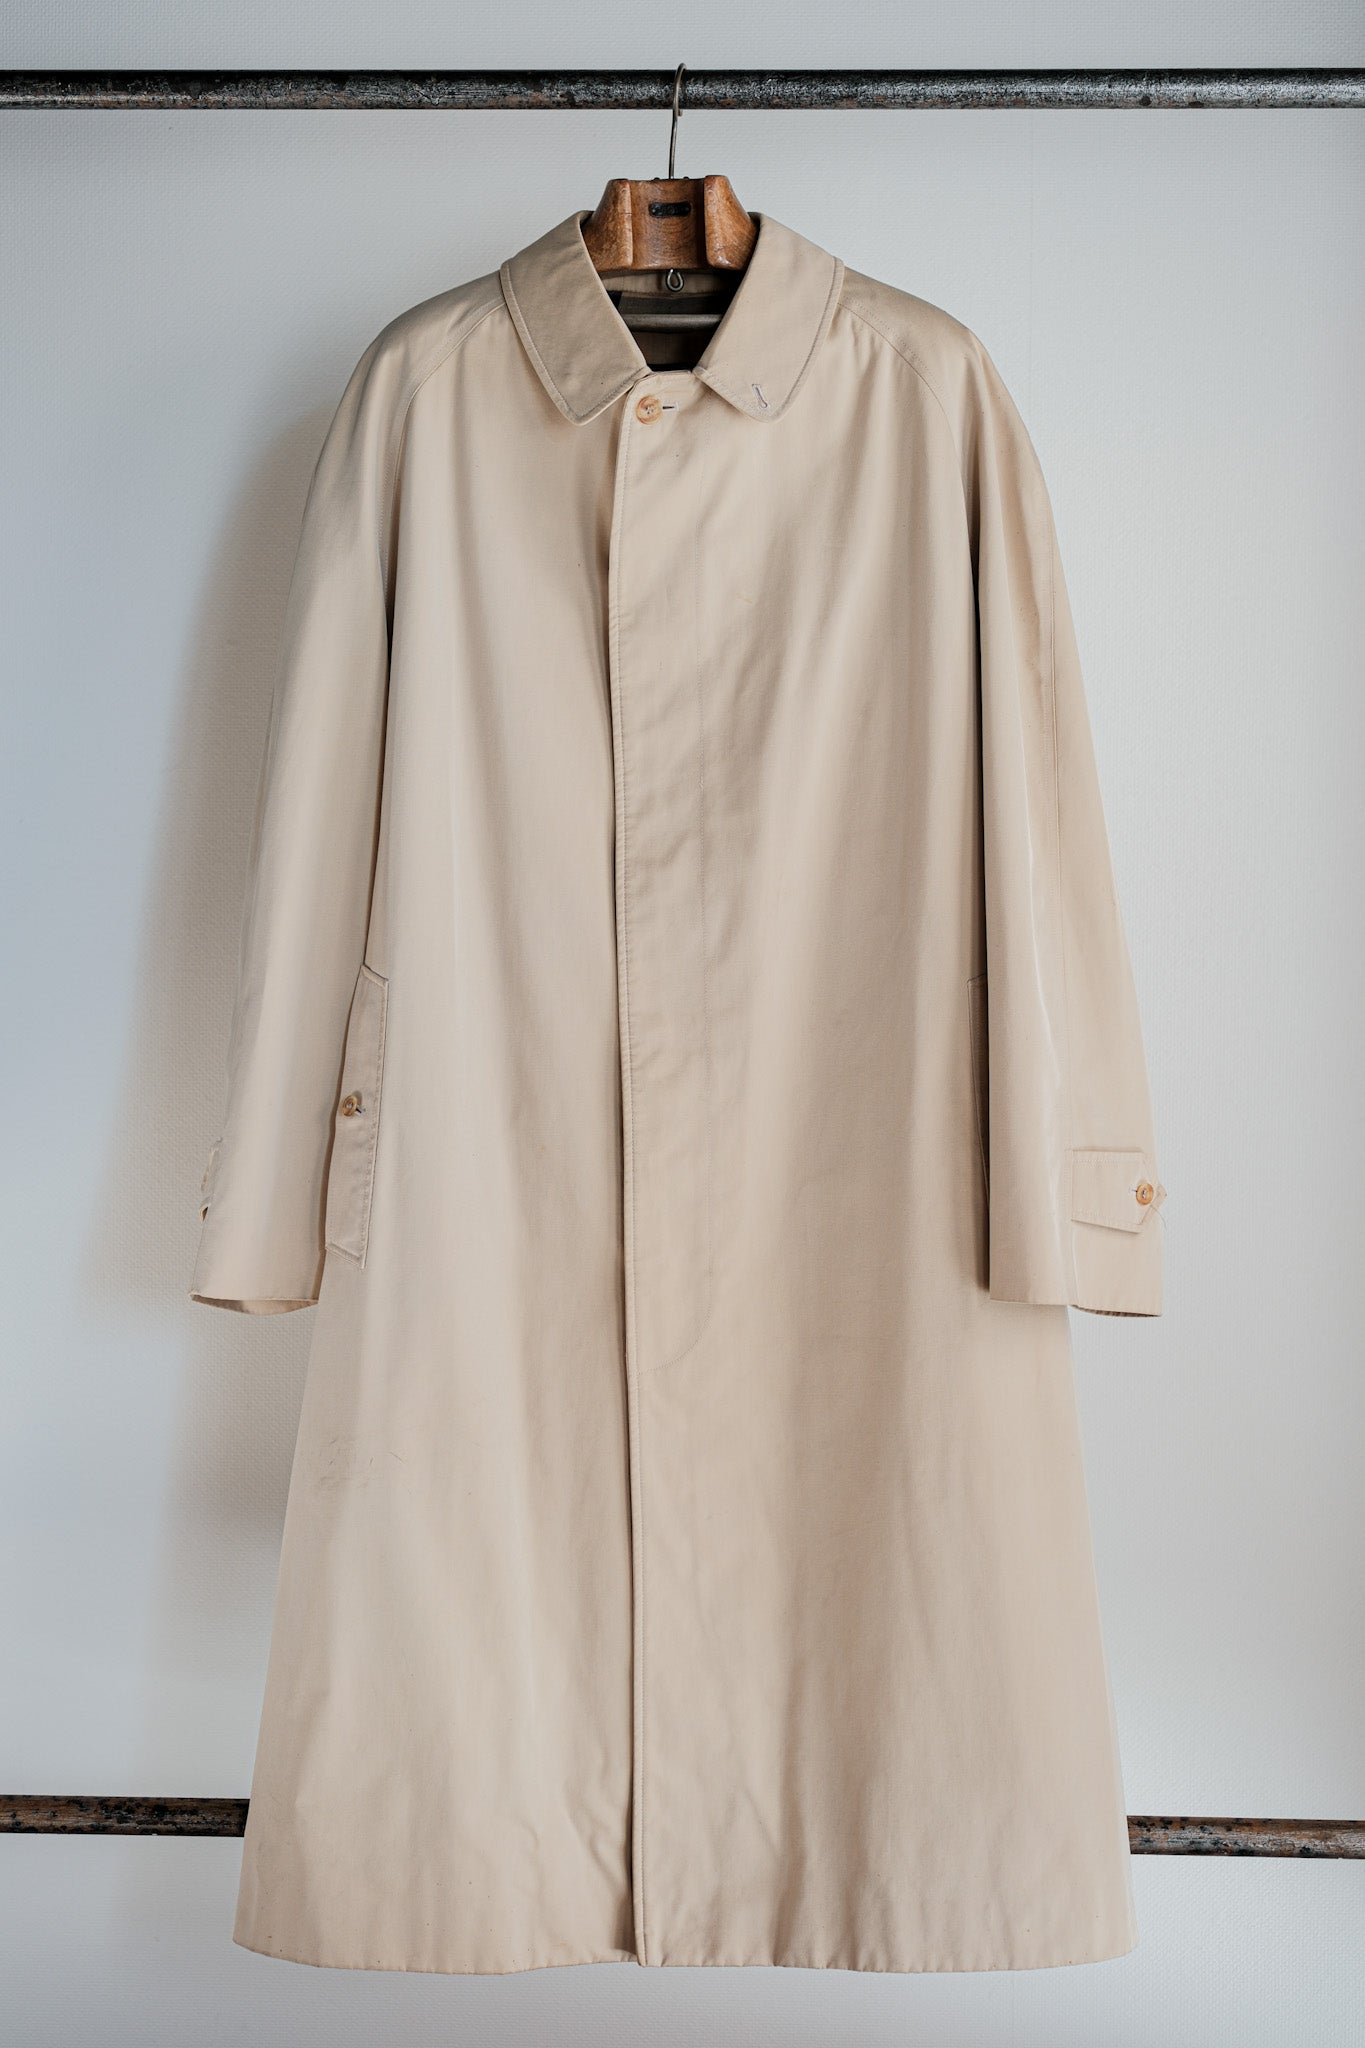 [~ 90's] Old Invertere Raglan Sleeve Balmacaan Coat COAT COAT C100 SIZE.42R "De Paz separate Note"